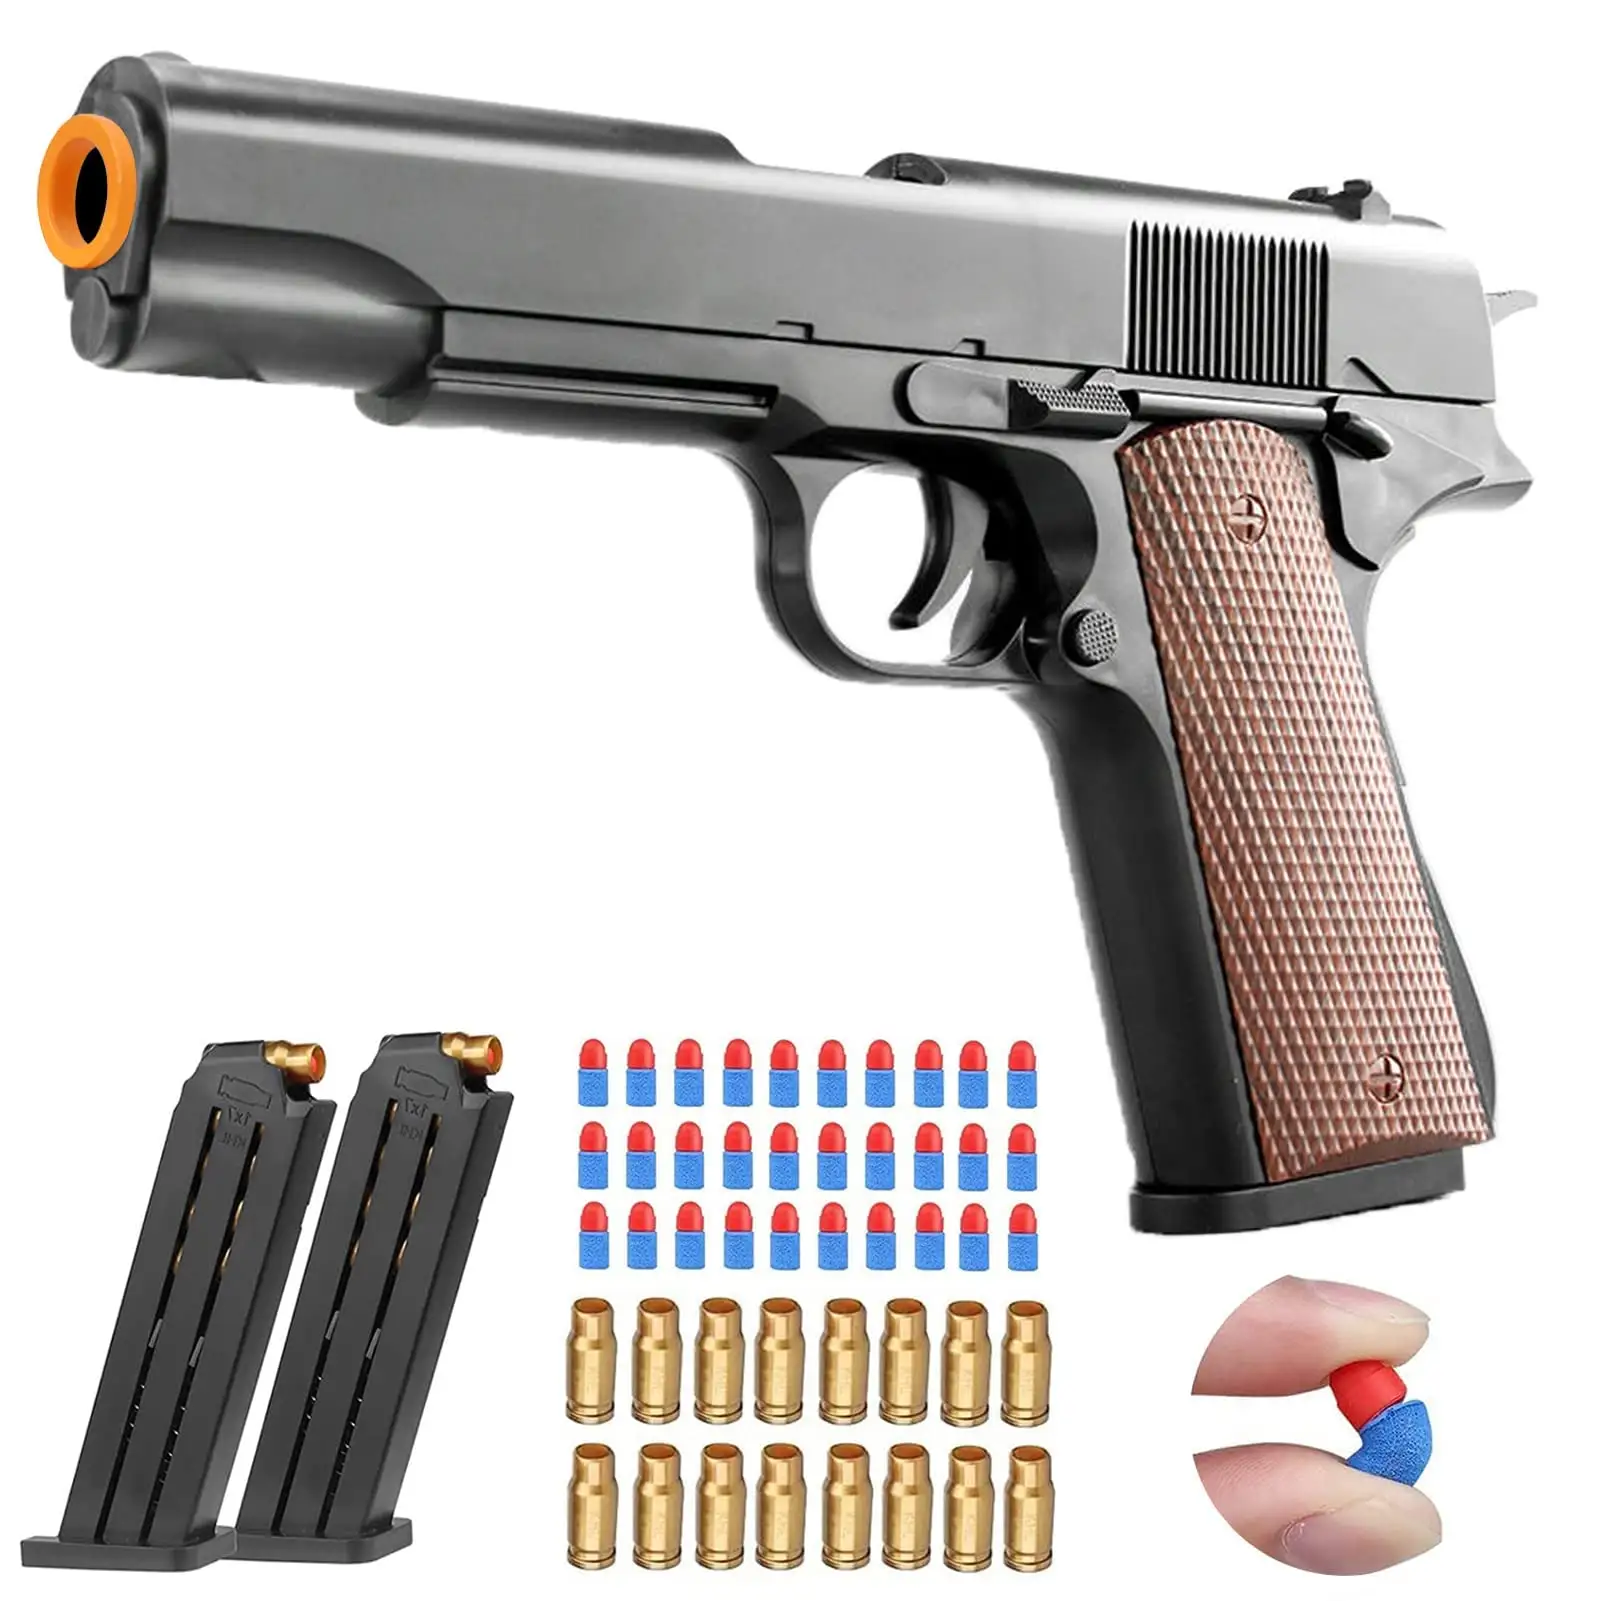 Pistola de juguete de plástico con cierre G para niños, juguete de seguridad ambiental, suave, para exteriores, regalo de cumpleaños y Navidad, M1911